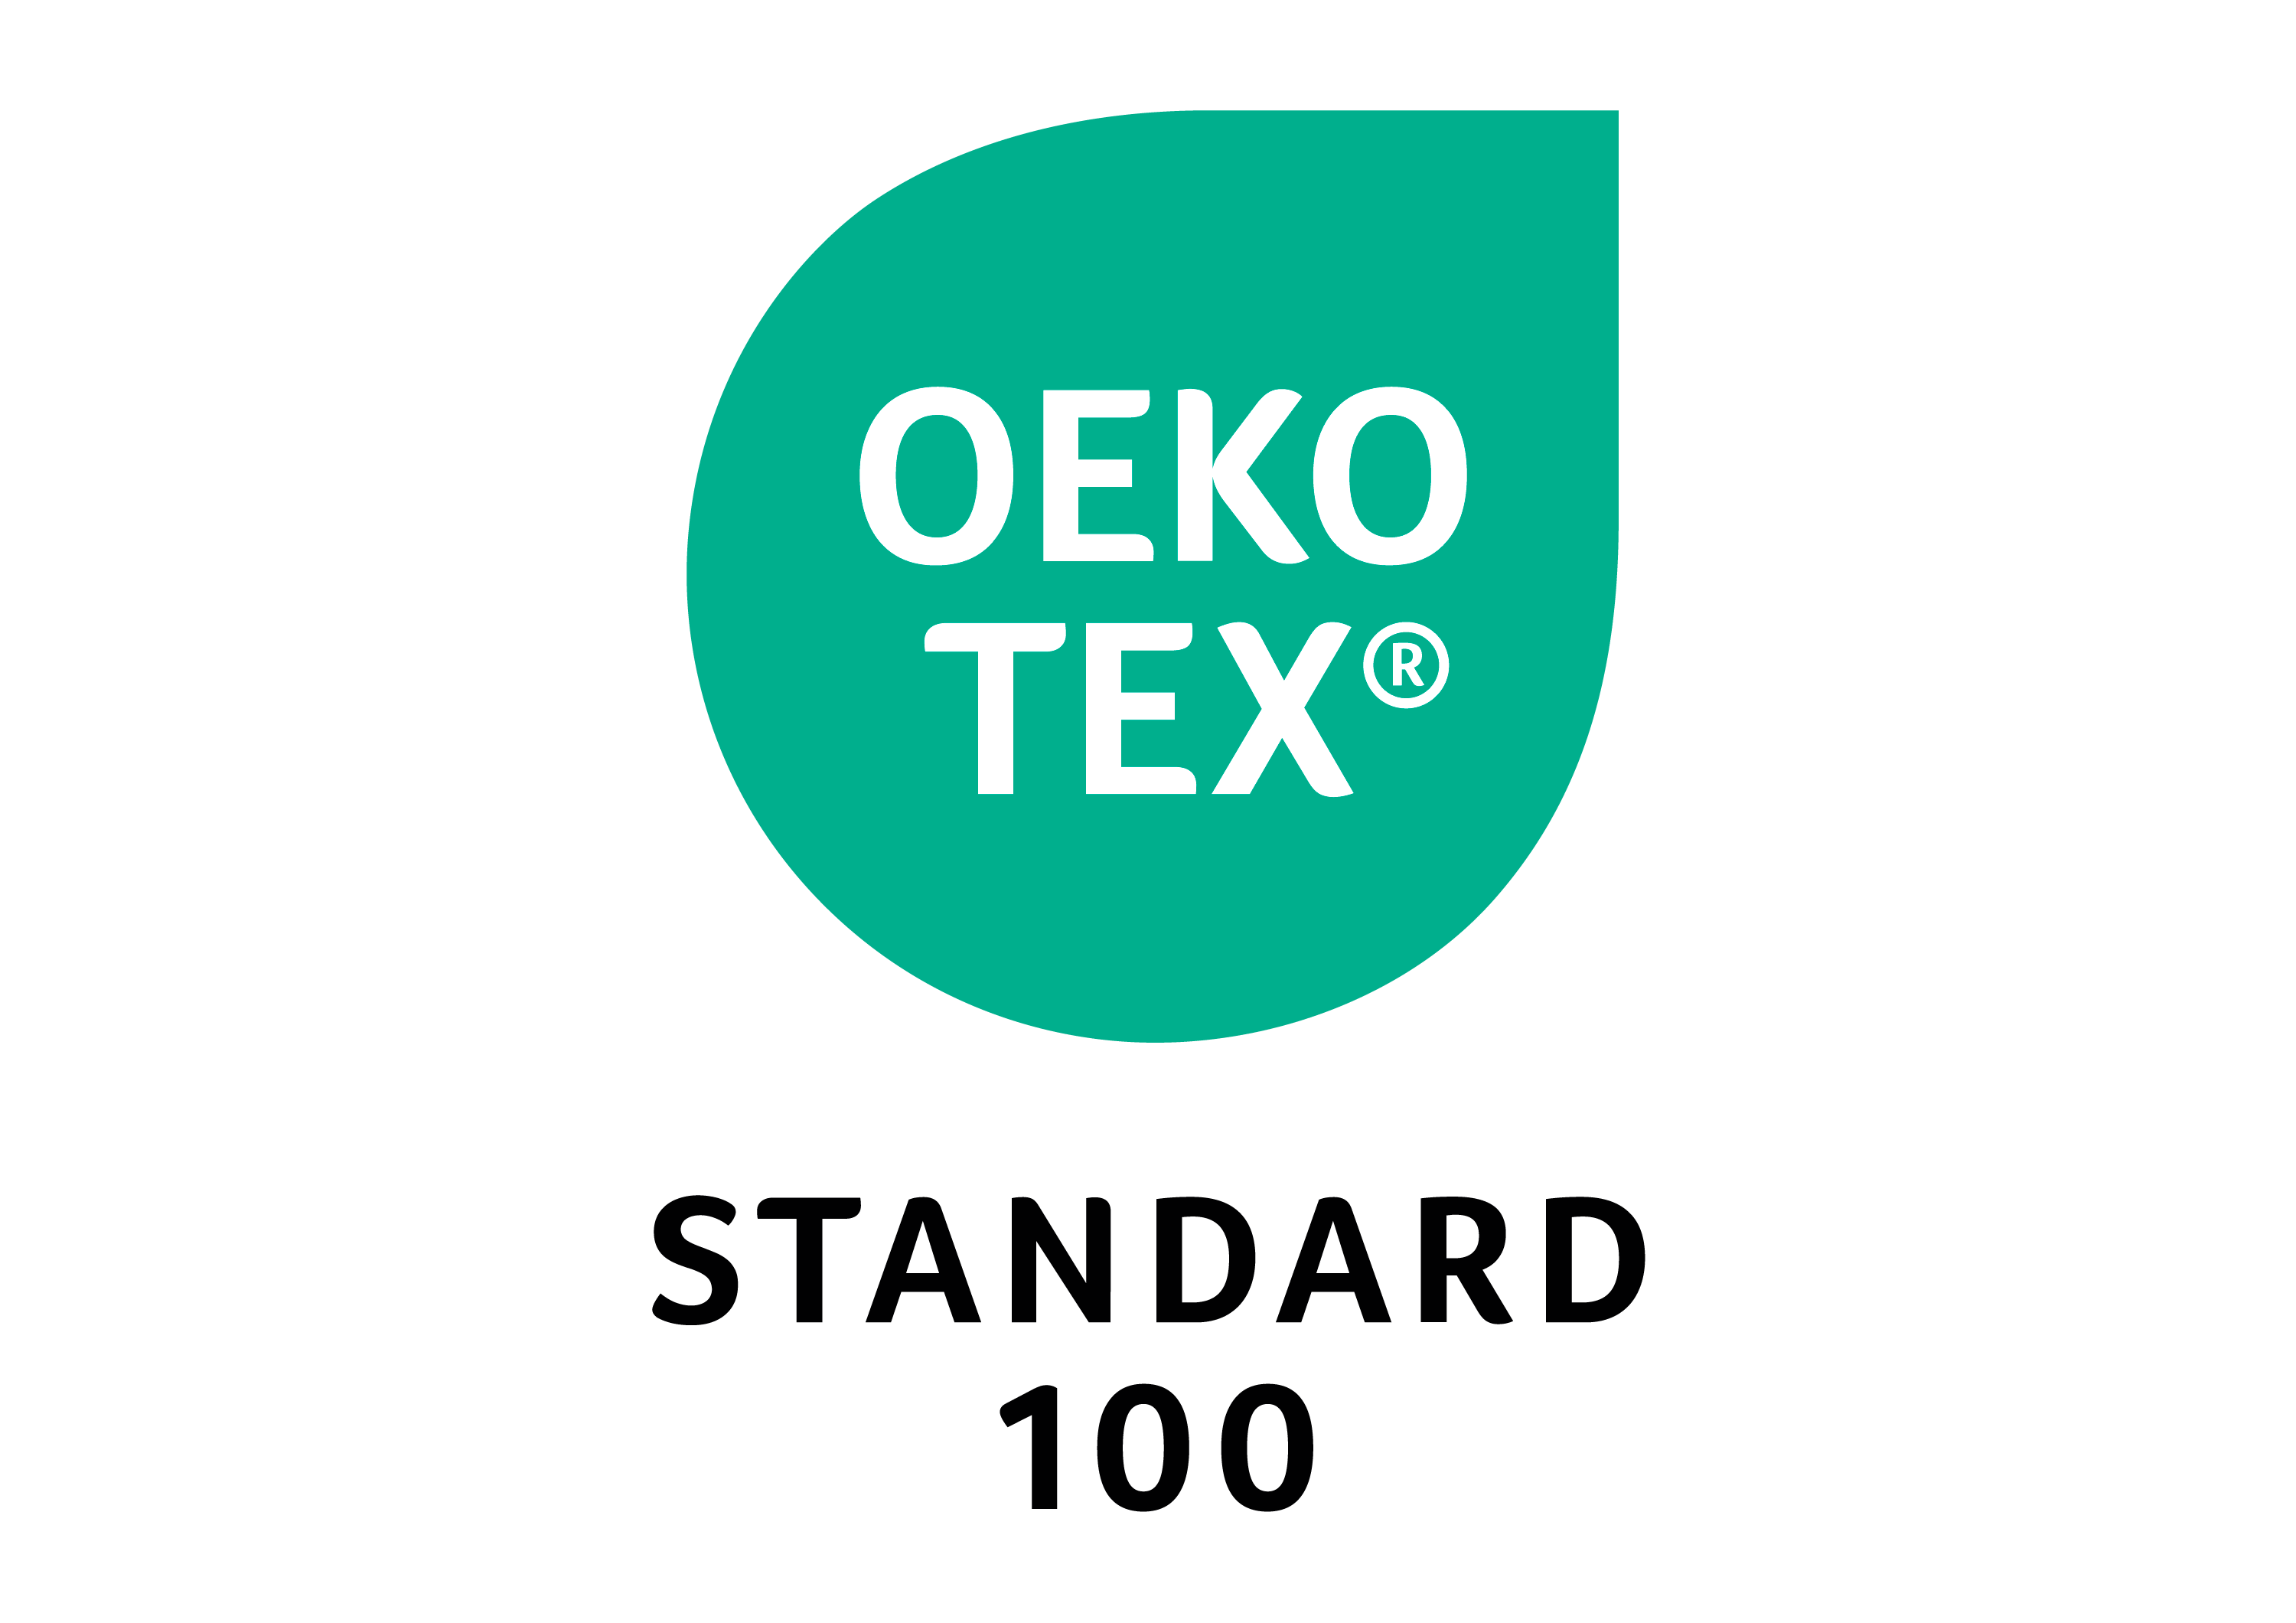 Le label Oeko-tex garantit qu'un vêtement est sans produit toxique pour la santé